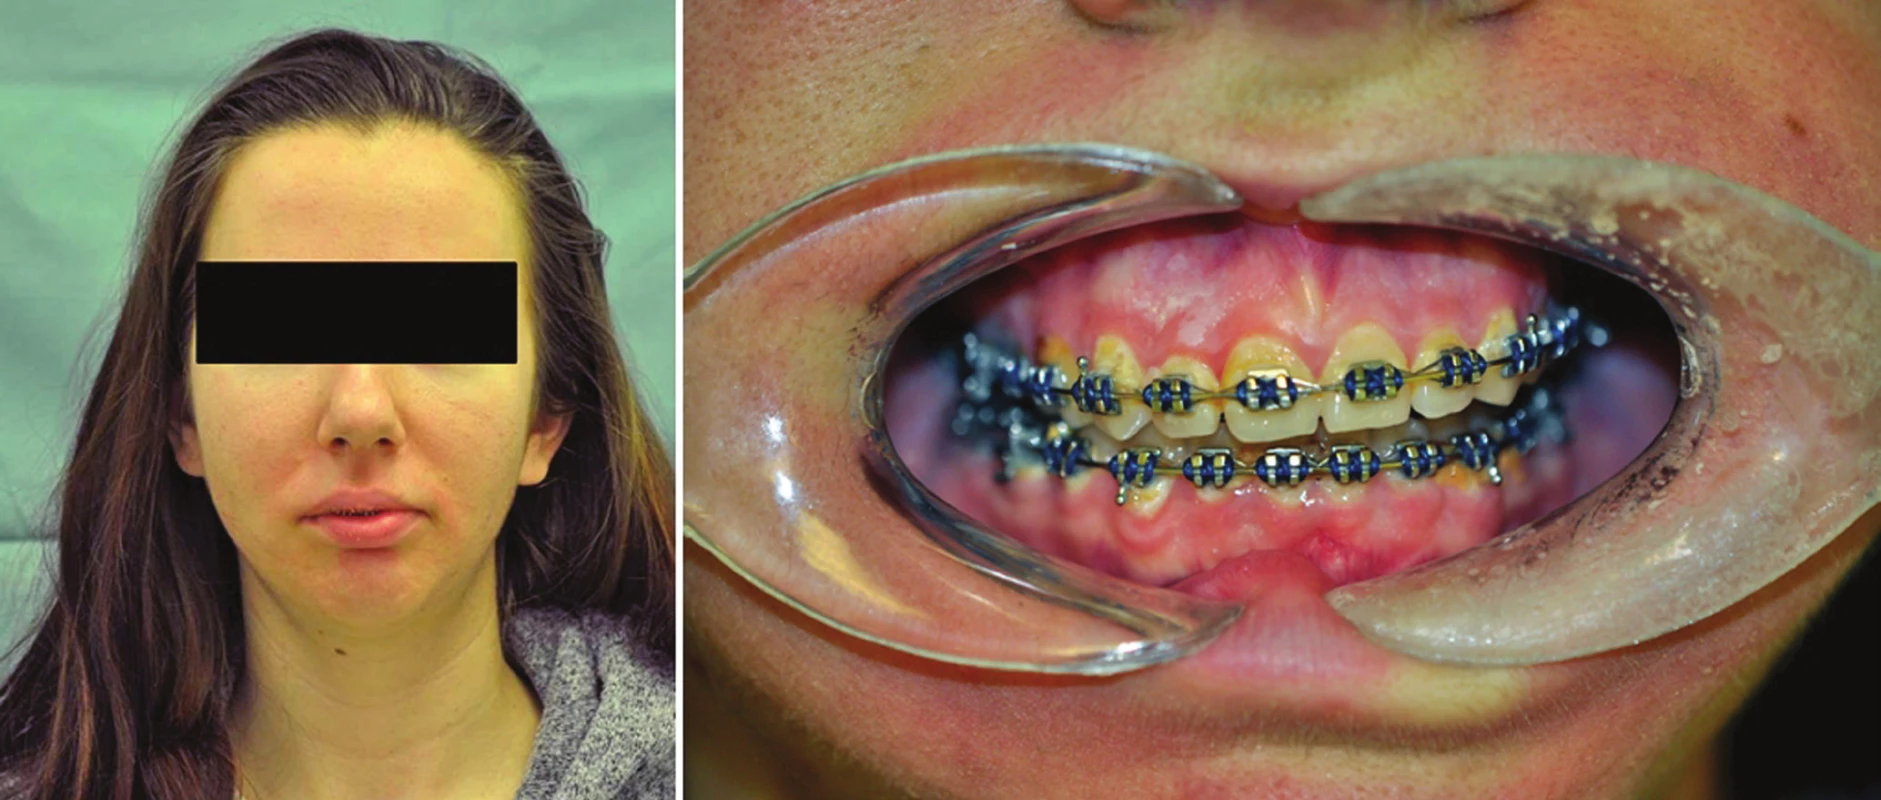 Pacientka s laterogenií doleva. Obrázek vlevo pohled „en face“, vpravo obraz skusu s nasazeným fixním ortodontickým aparátkem.